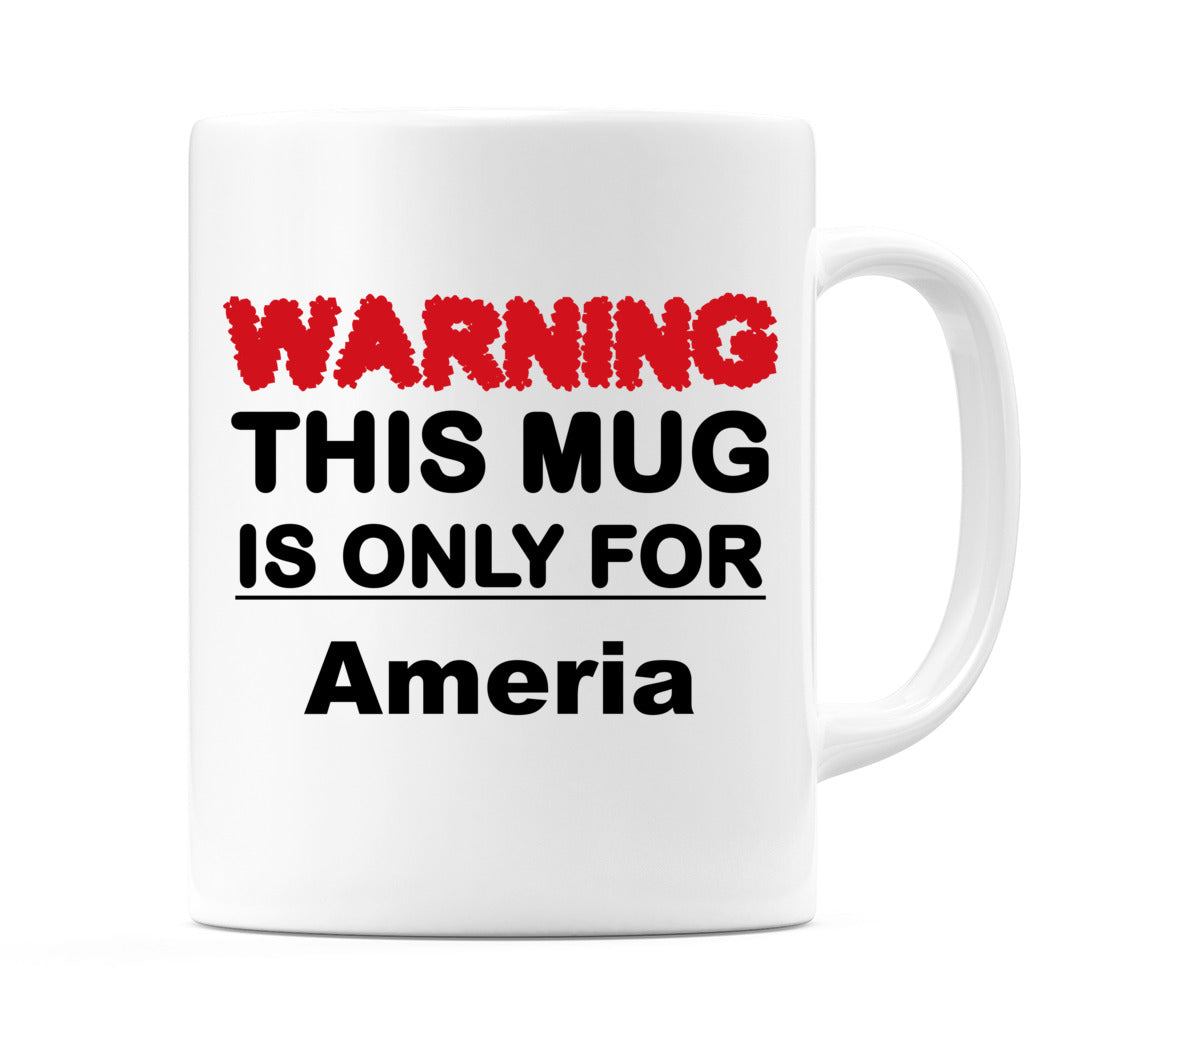 Warning This Mug is ONLY for Ameria Mug